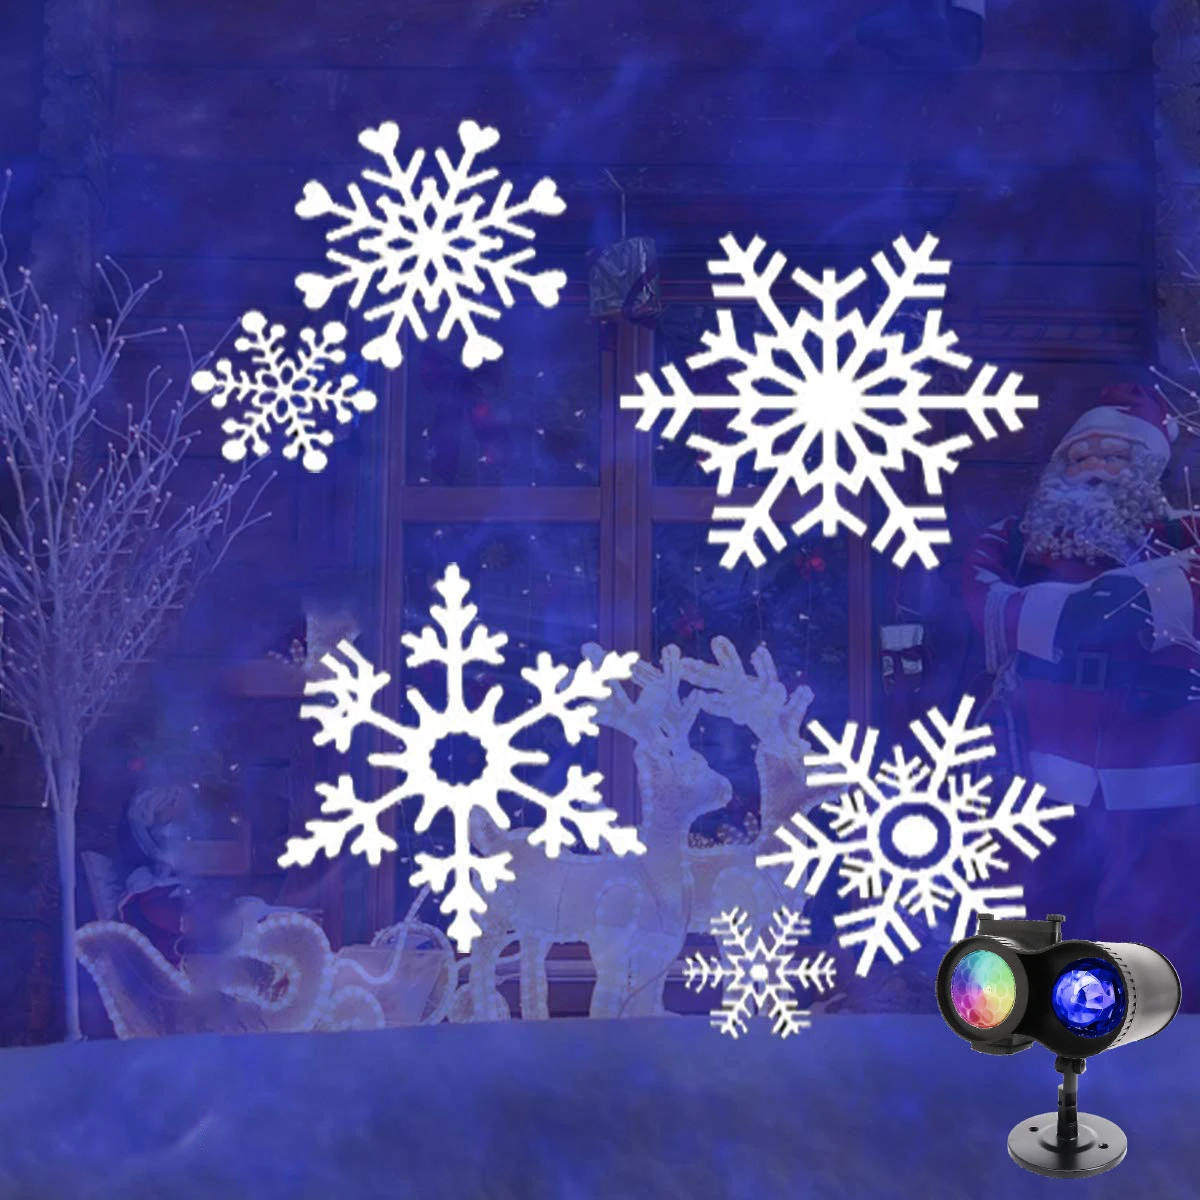 Binval праздник светодиодный двойной настенные светильники 2-в-1 с вращающимся Снежинка с эффектом падающего снега 16 шлепанцы без задника с открытыми пальцами эффект сценического Света для Рождества